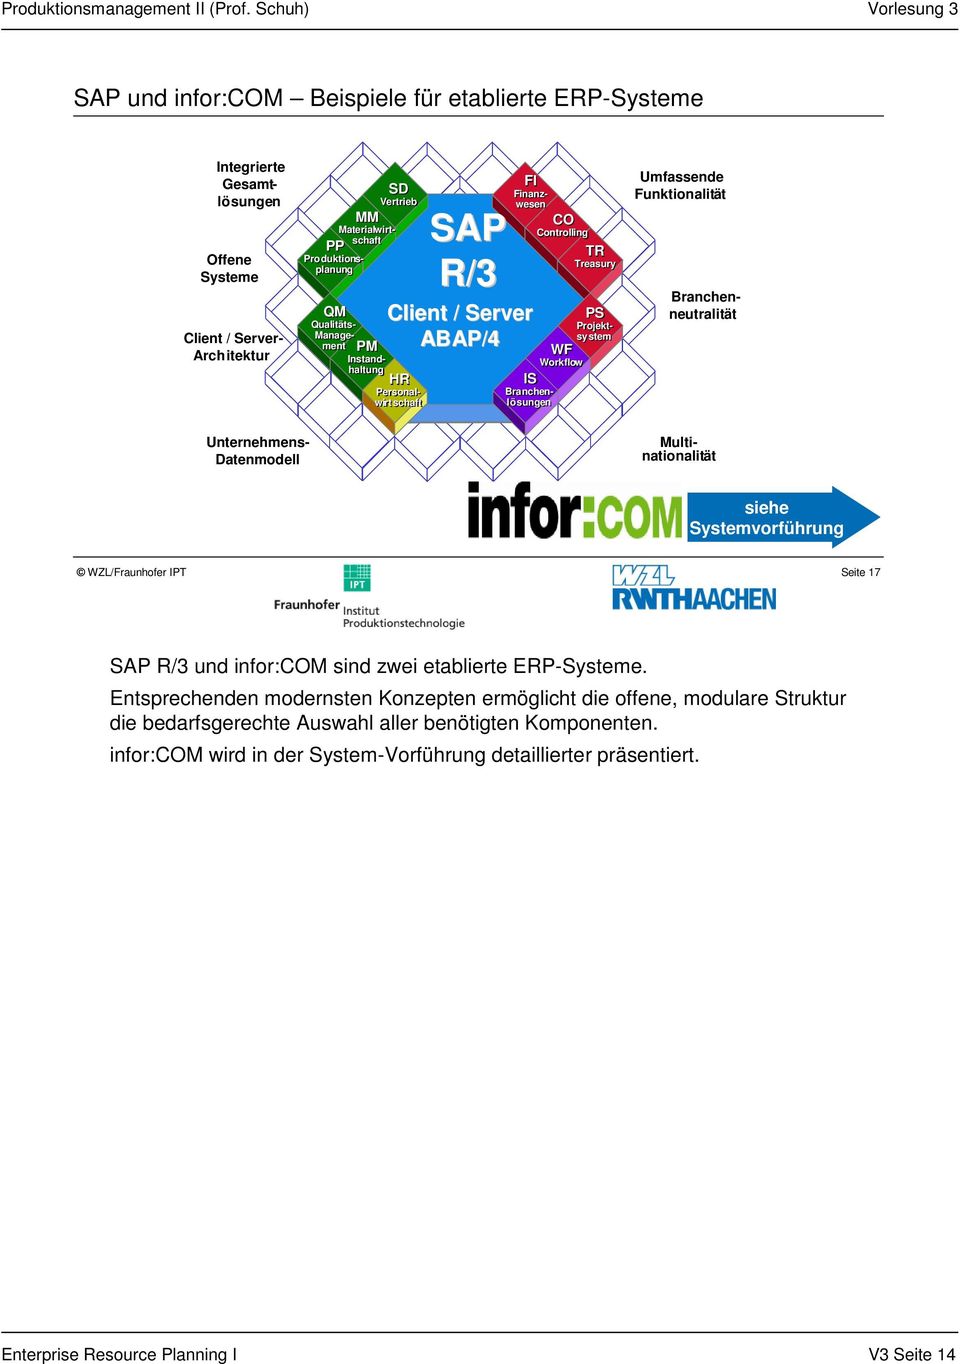 Umfassende Funktionalität Multinationalität Branchenneutralität Unternehmens- Datenmodell siehe Systemvorführung Seite 17 SAP R/3 und infor:com sind zwei etablierte ERP-Systeme.